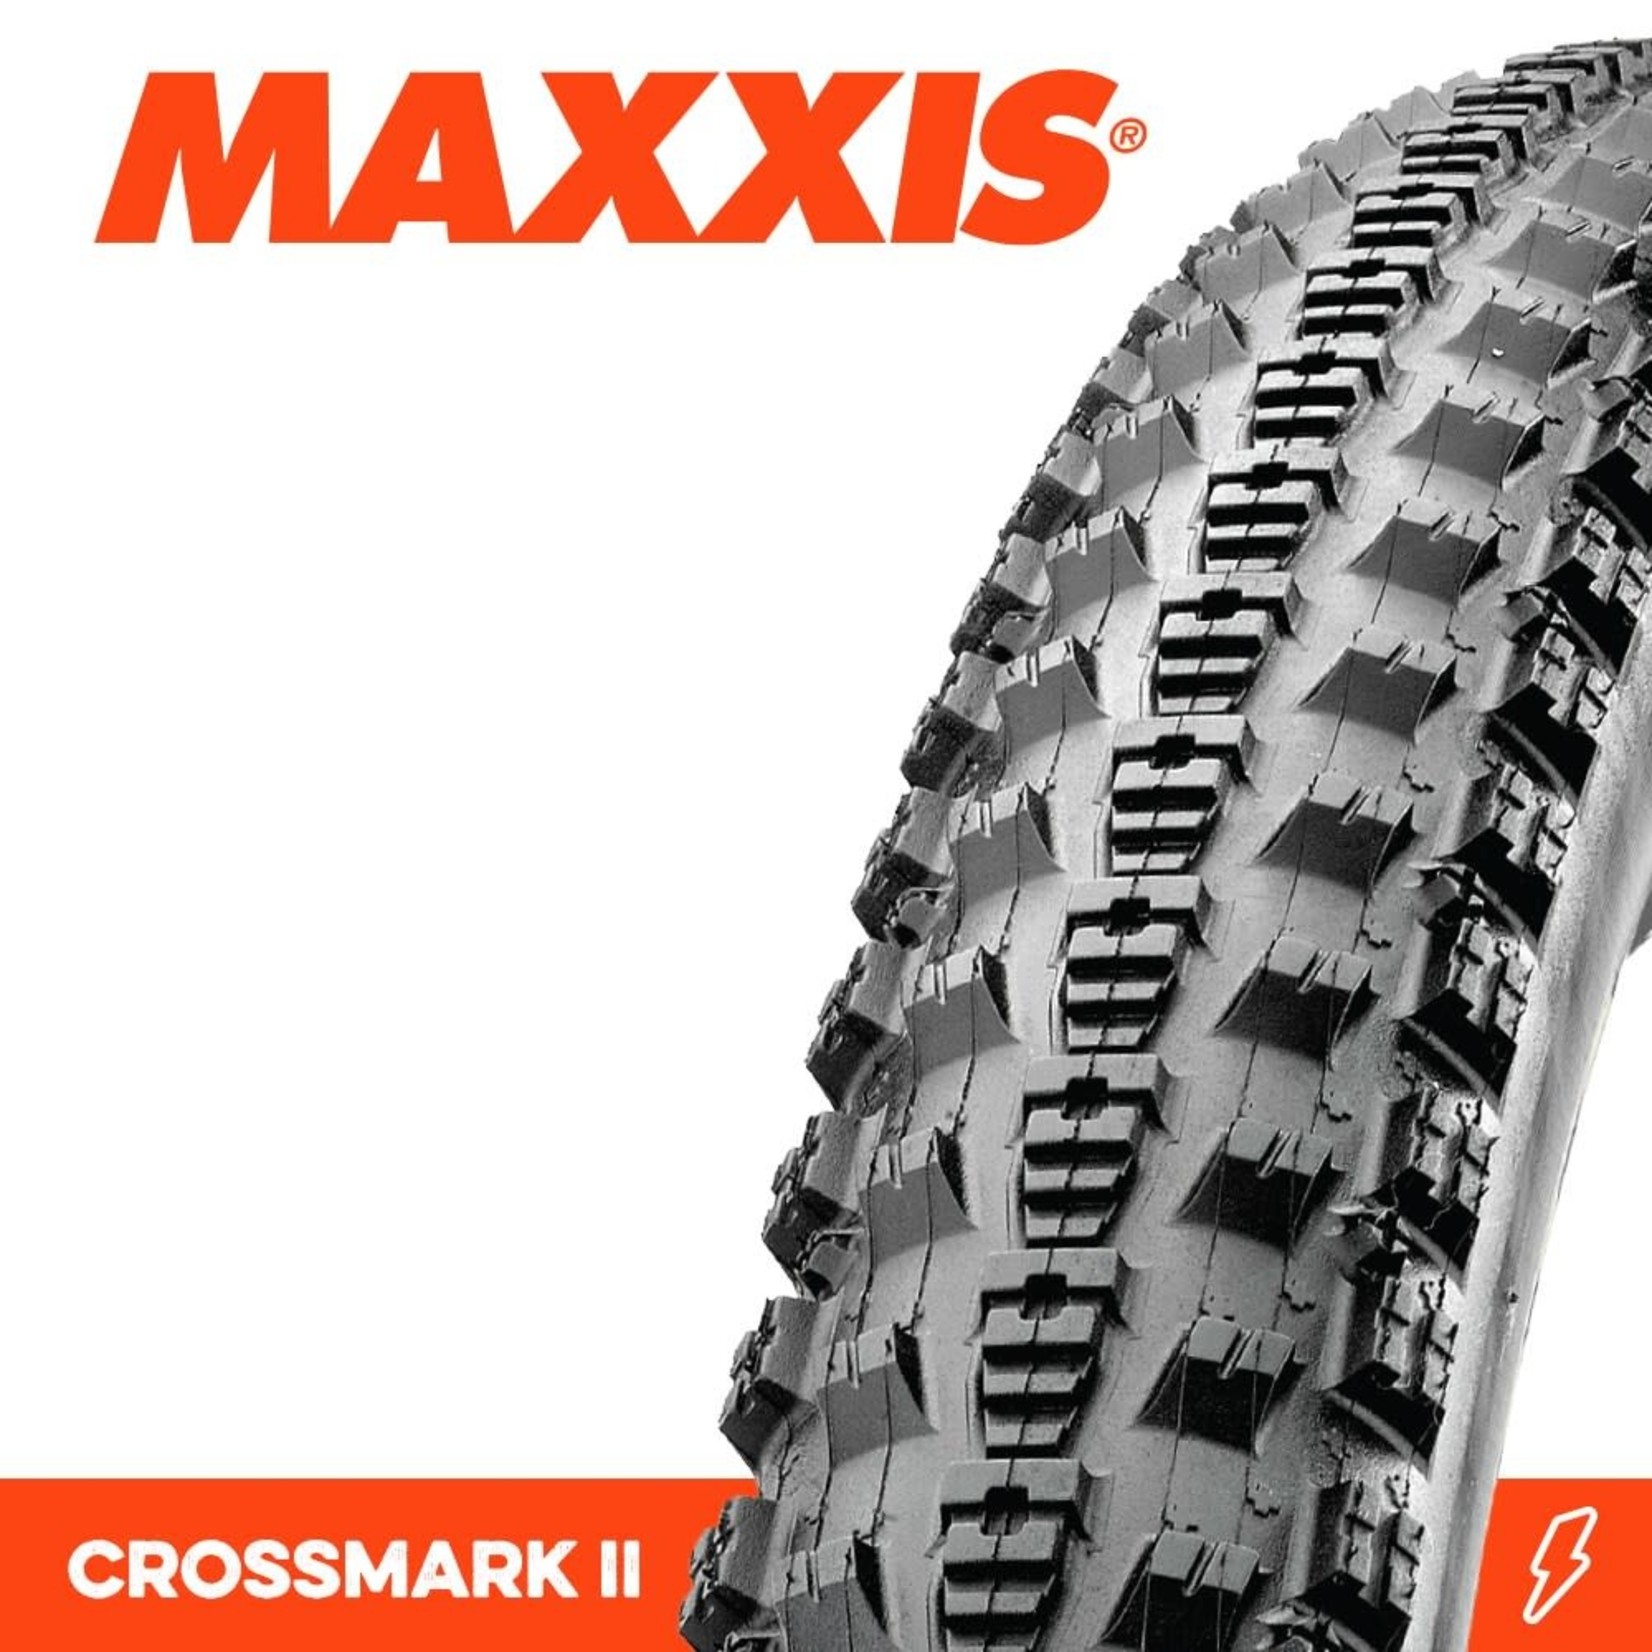 Maxxis Maxxis Crossmark II Bike Tyre - 27.5 X 2.10 - Folding - 60TPI - Pair